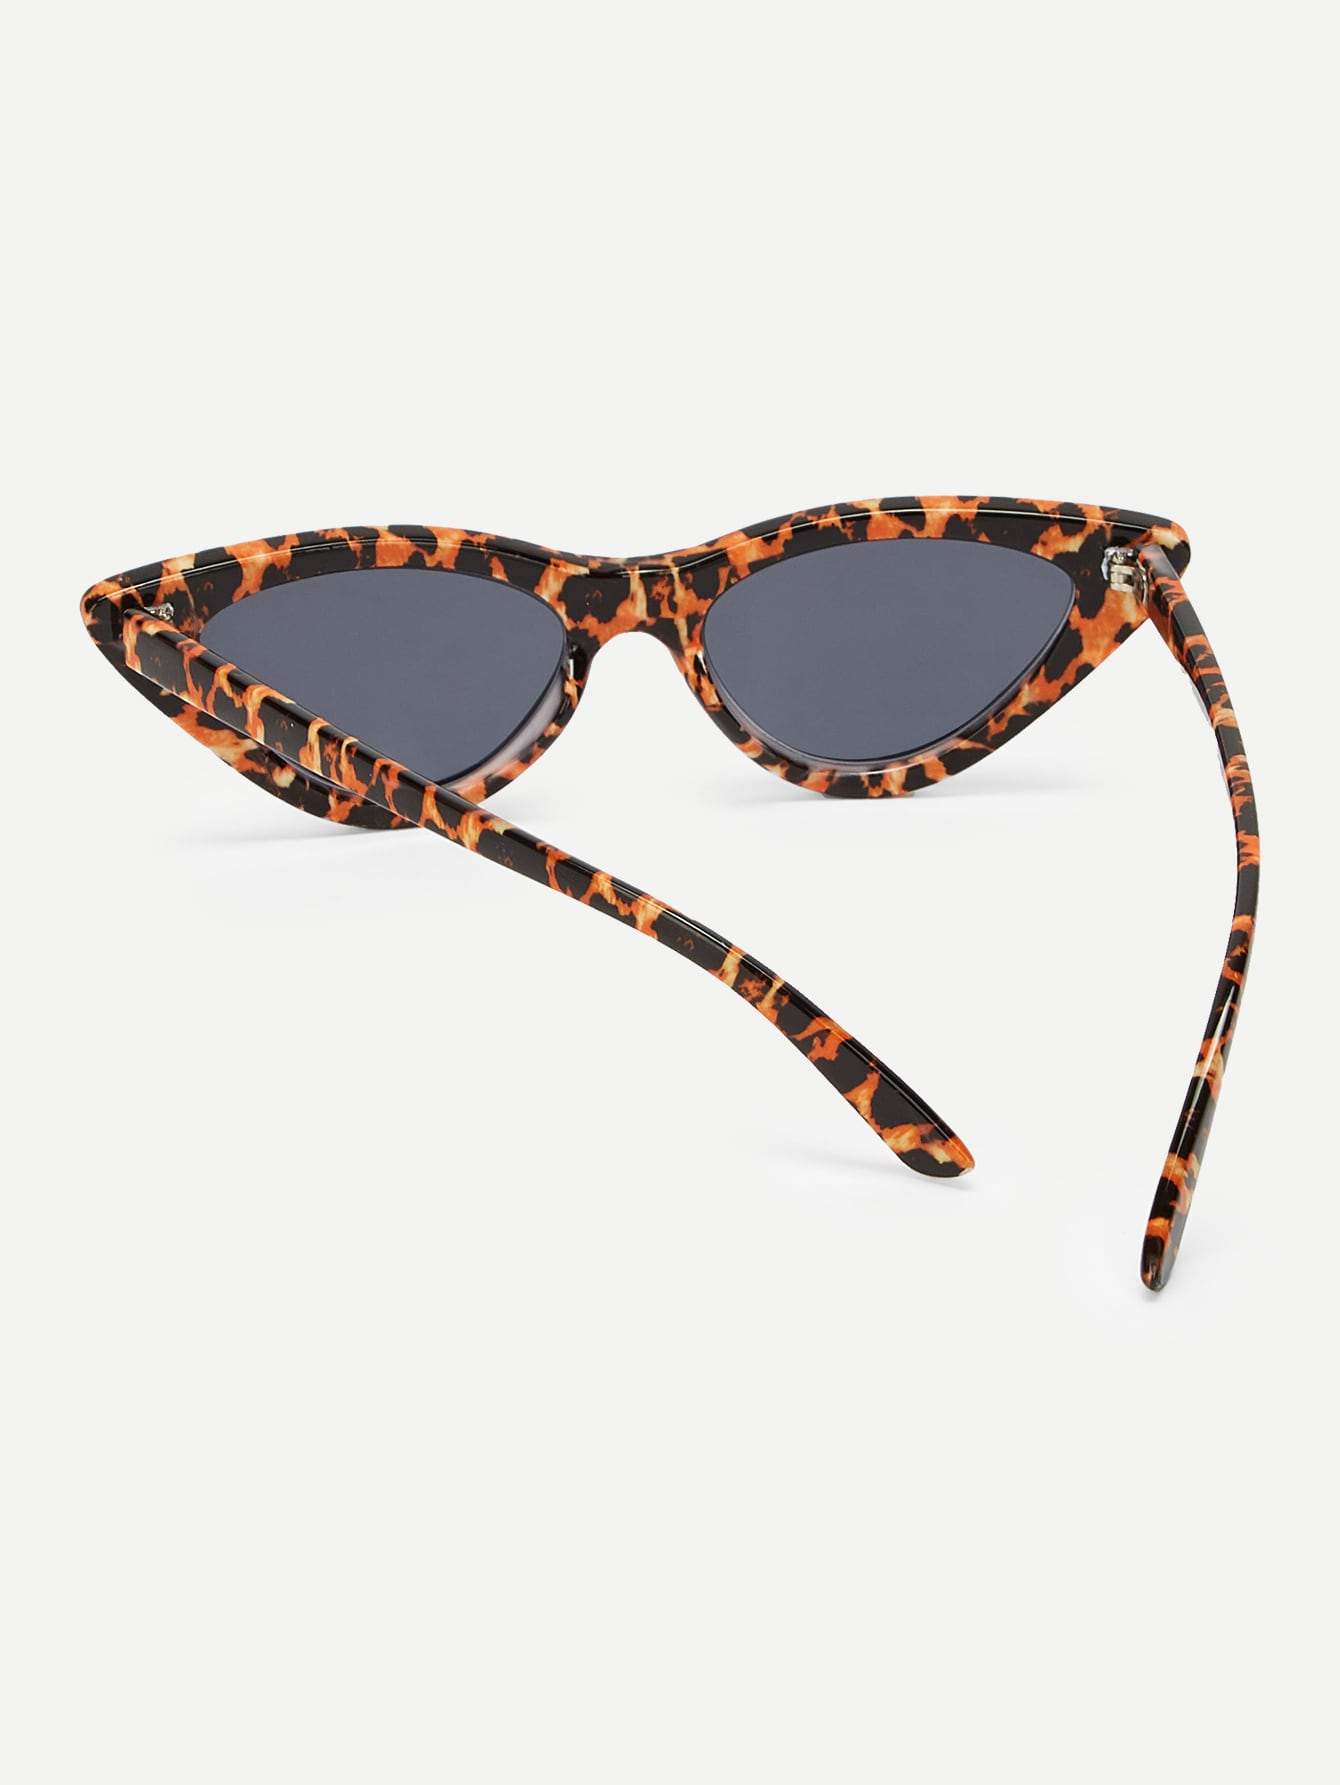 Tortoiseshell Frame Cat Eye Sunglasses